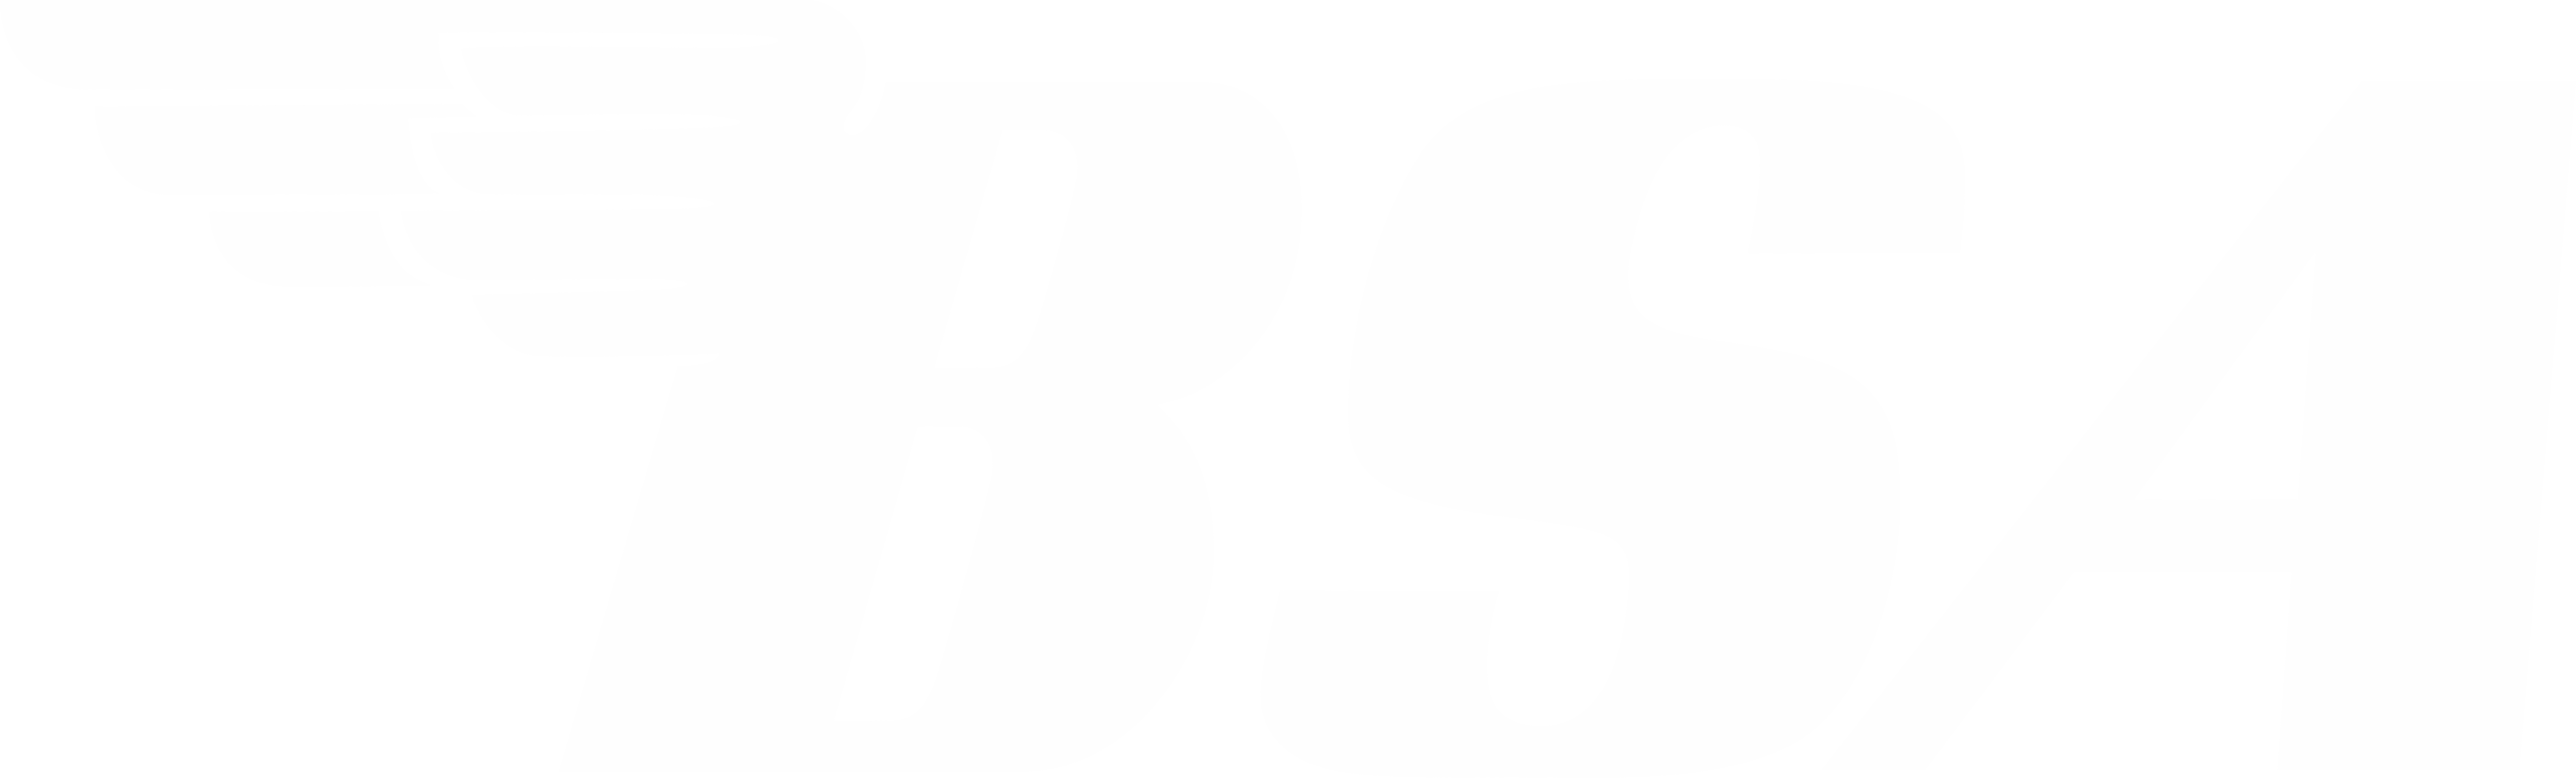 bsa